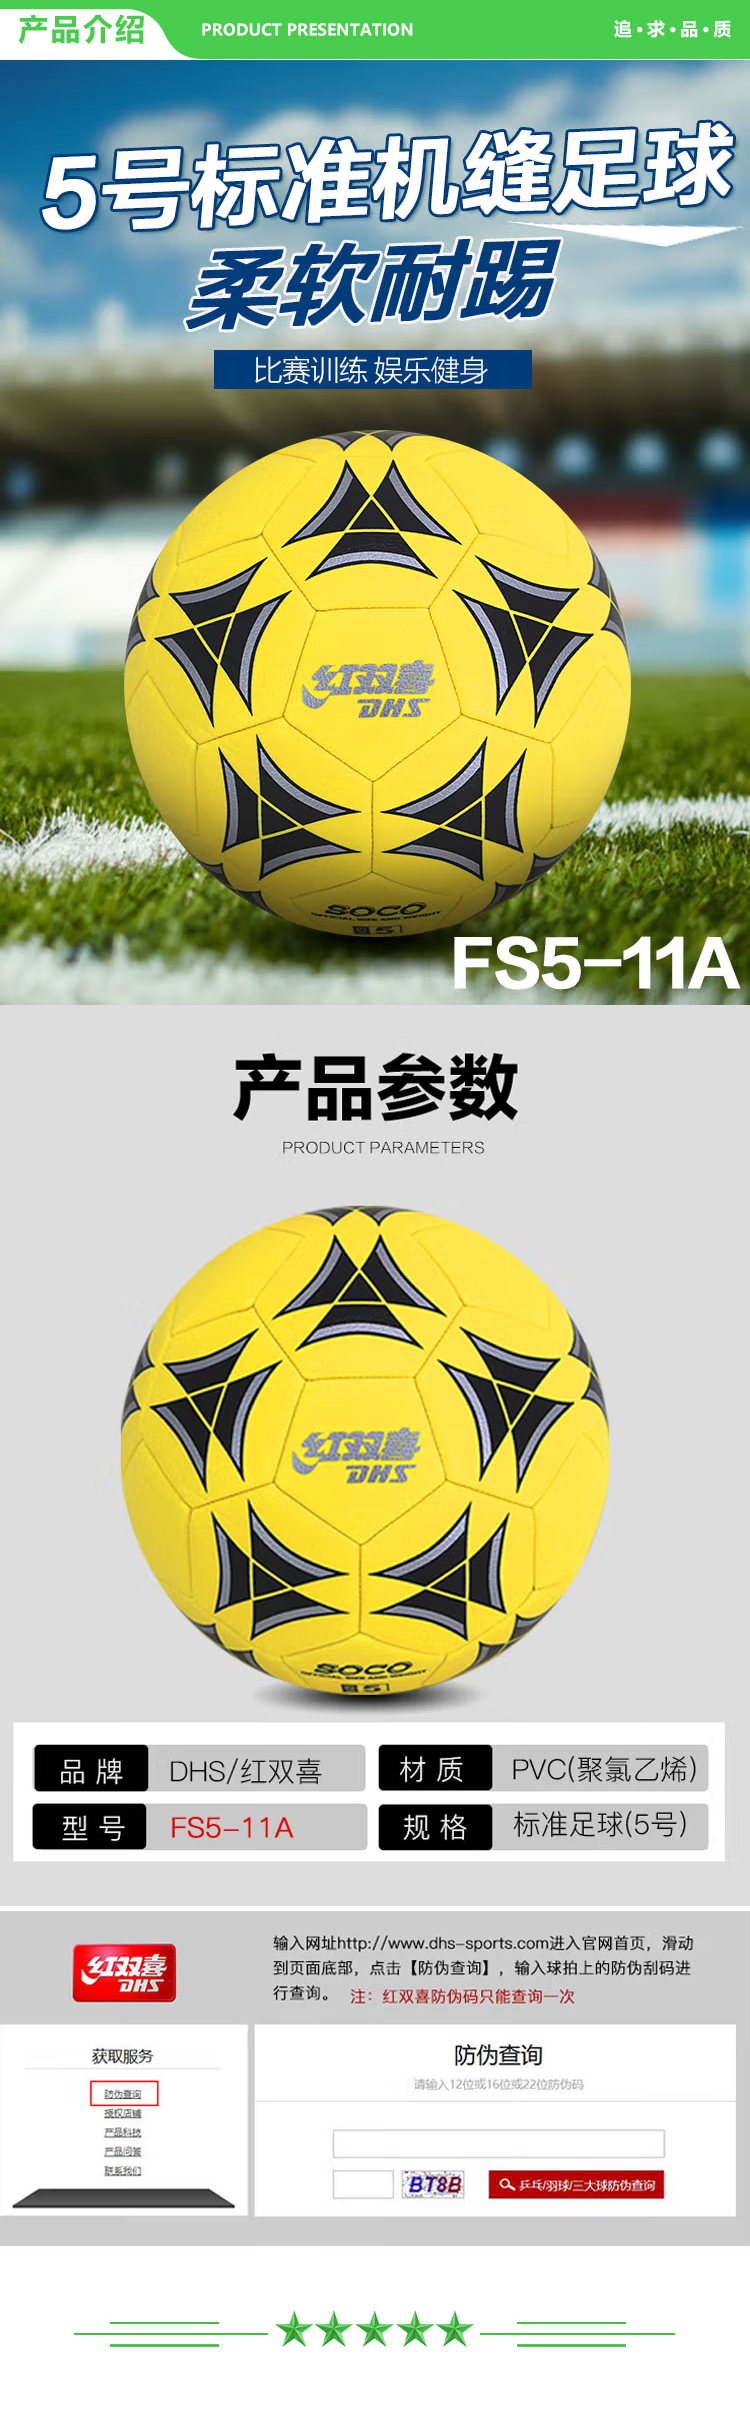 红双喜 DHS FS5-11A 米黄色 5号机缝比赛足球训练不易磨损柔软舒适 足球 .jpg